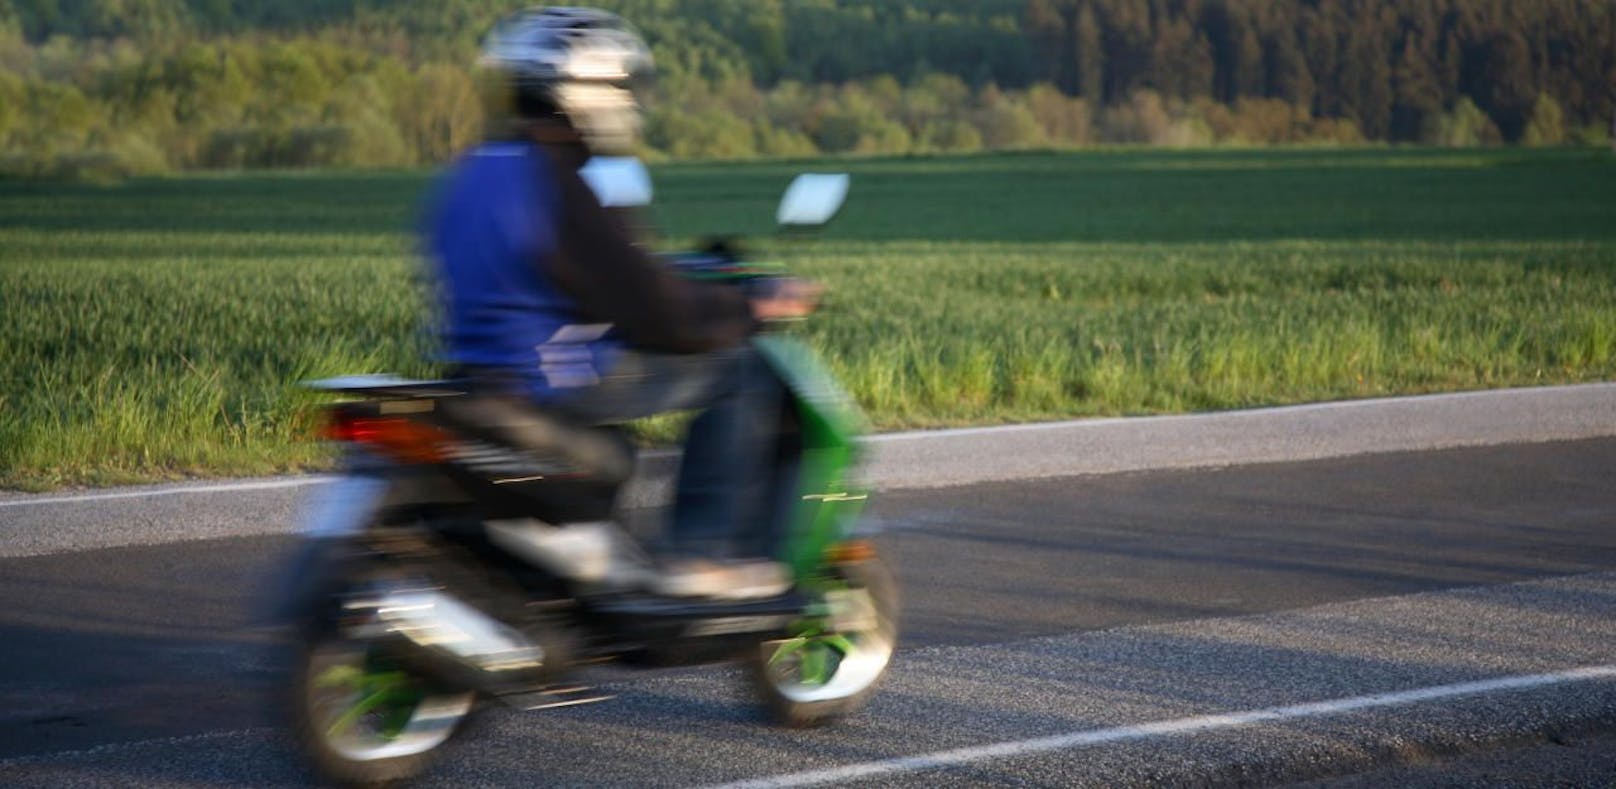 Der junge Moped-Fahrer war mit knapp 100 km/h unterwegs.